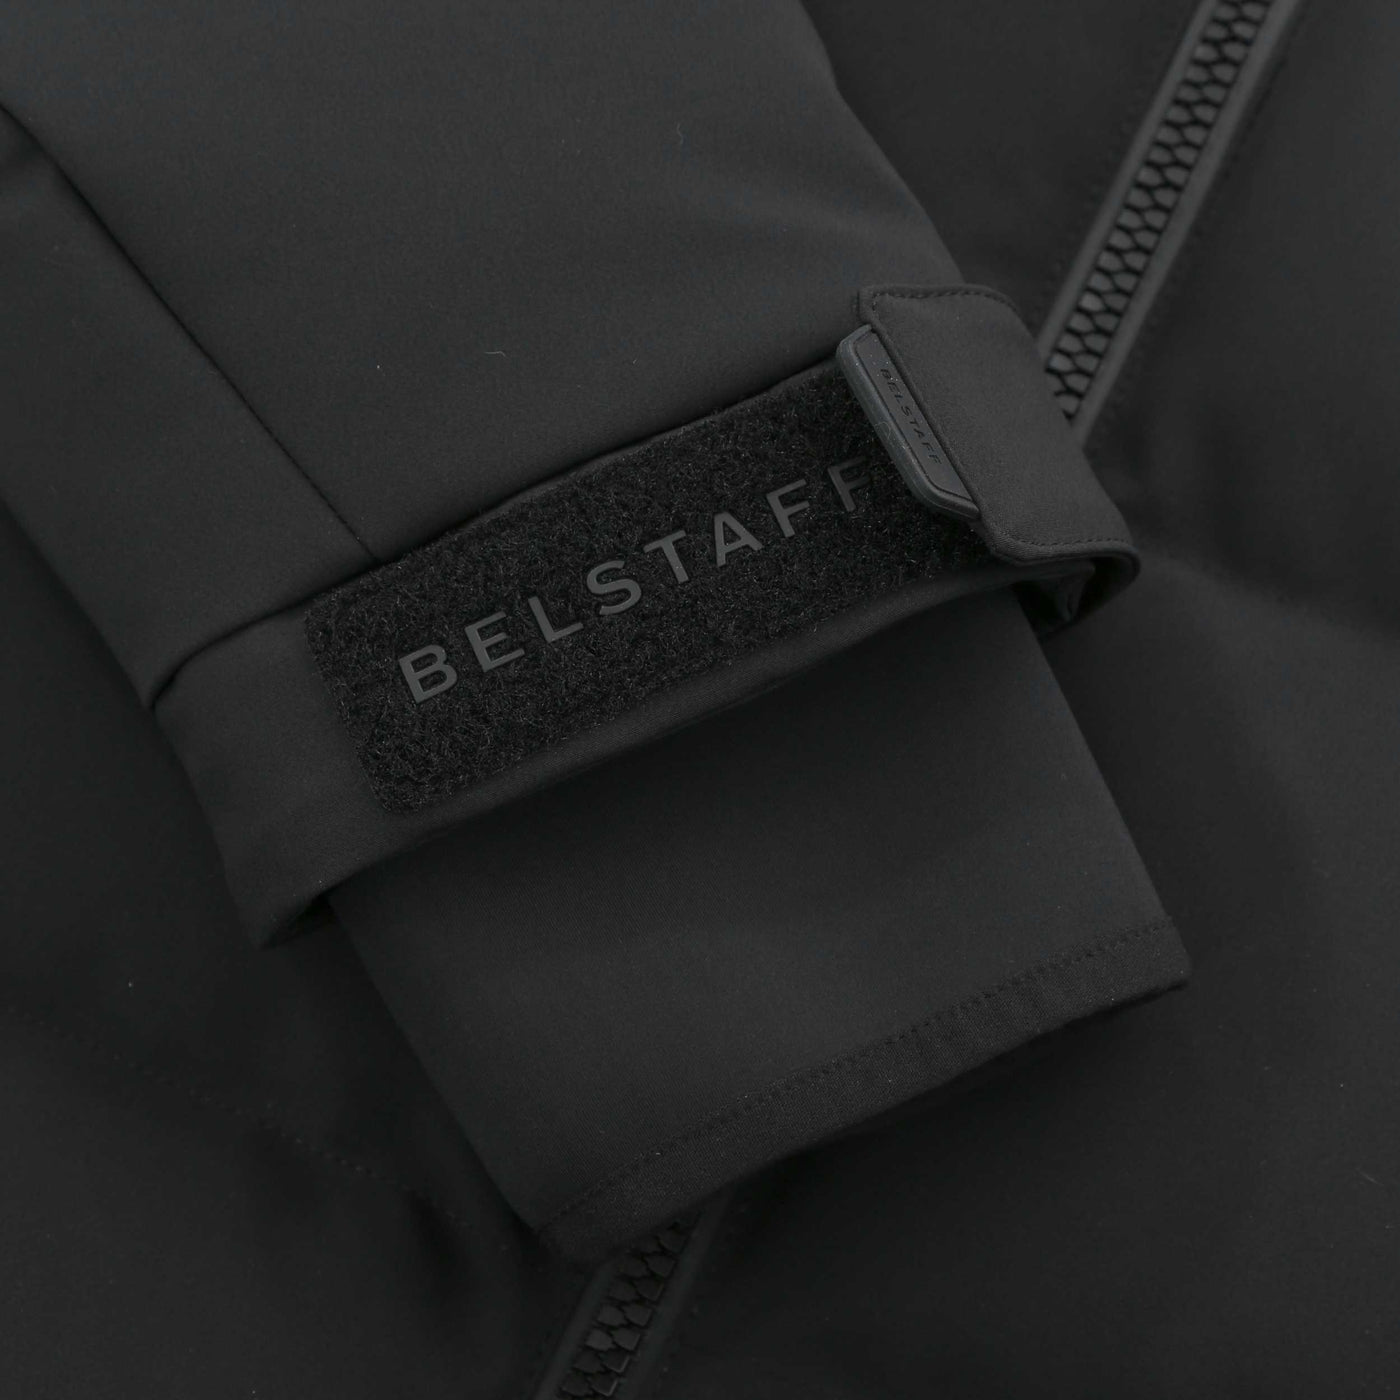 Belstaff Pulse Jacket in Black Sleeve Logo